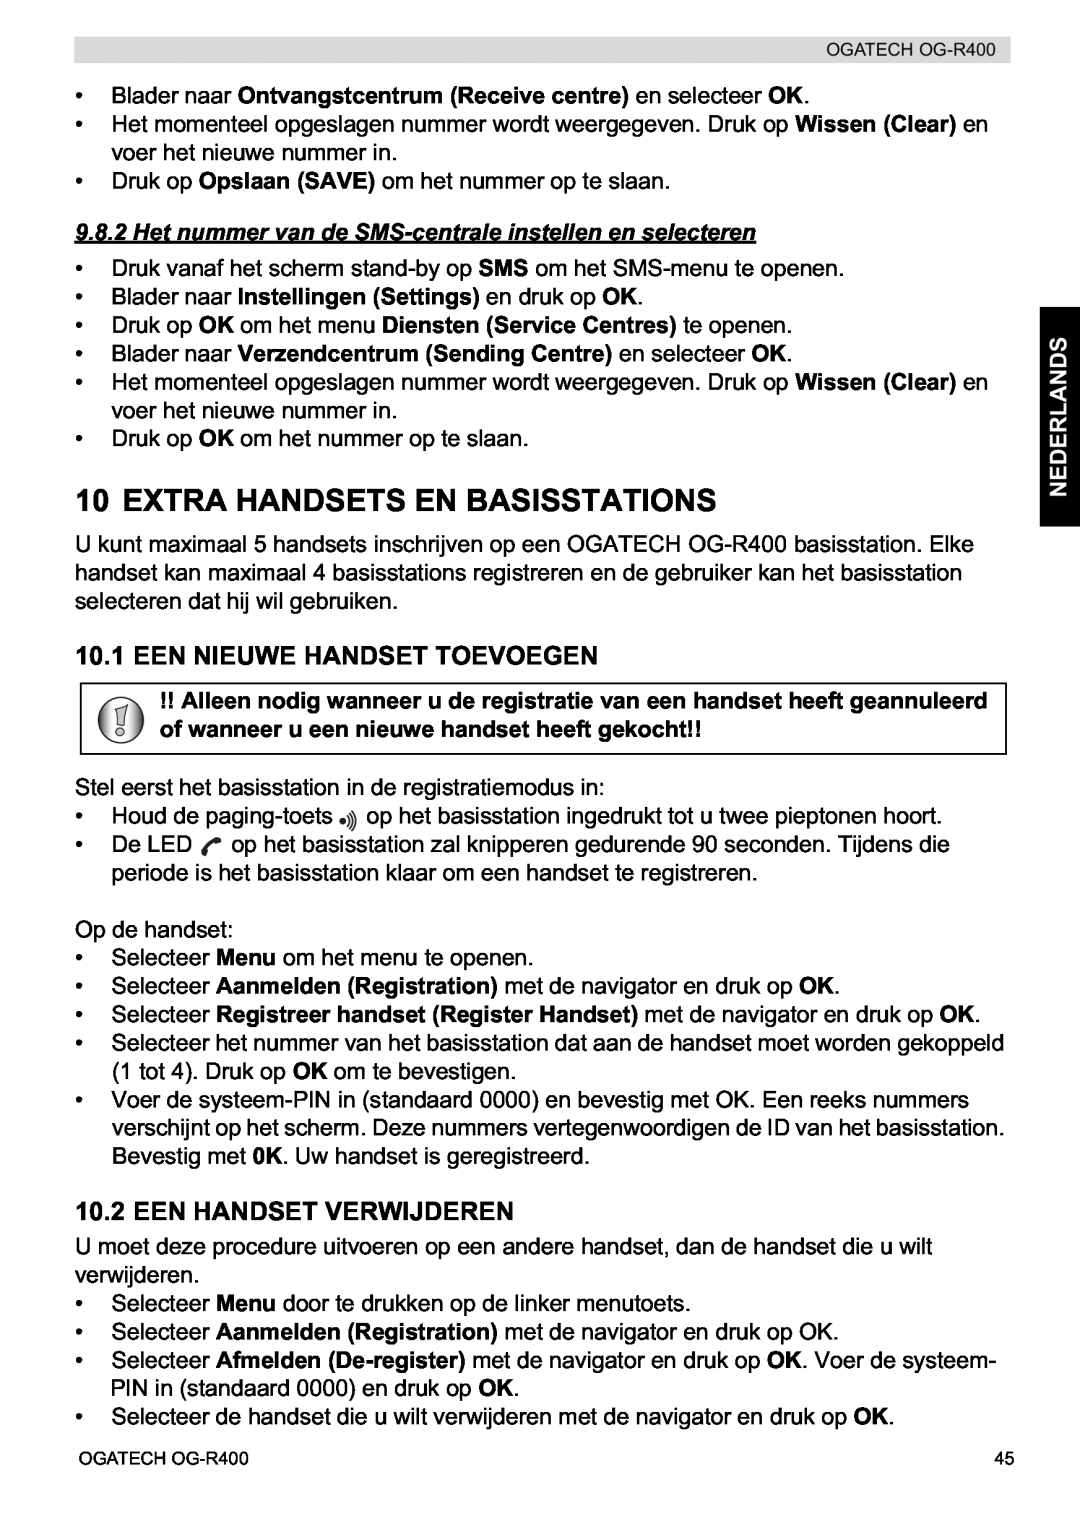 Topcom OG-R400 manual Extra Handsets En Basisstations, Een Nieuwe Handset Toevoegen, Een Handset Verwijderen, Nederlands 